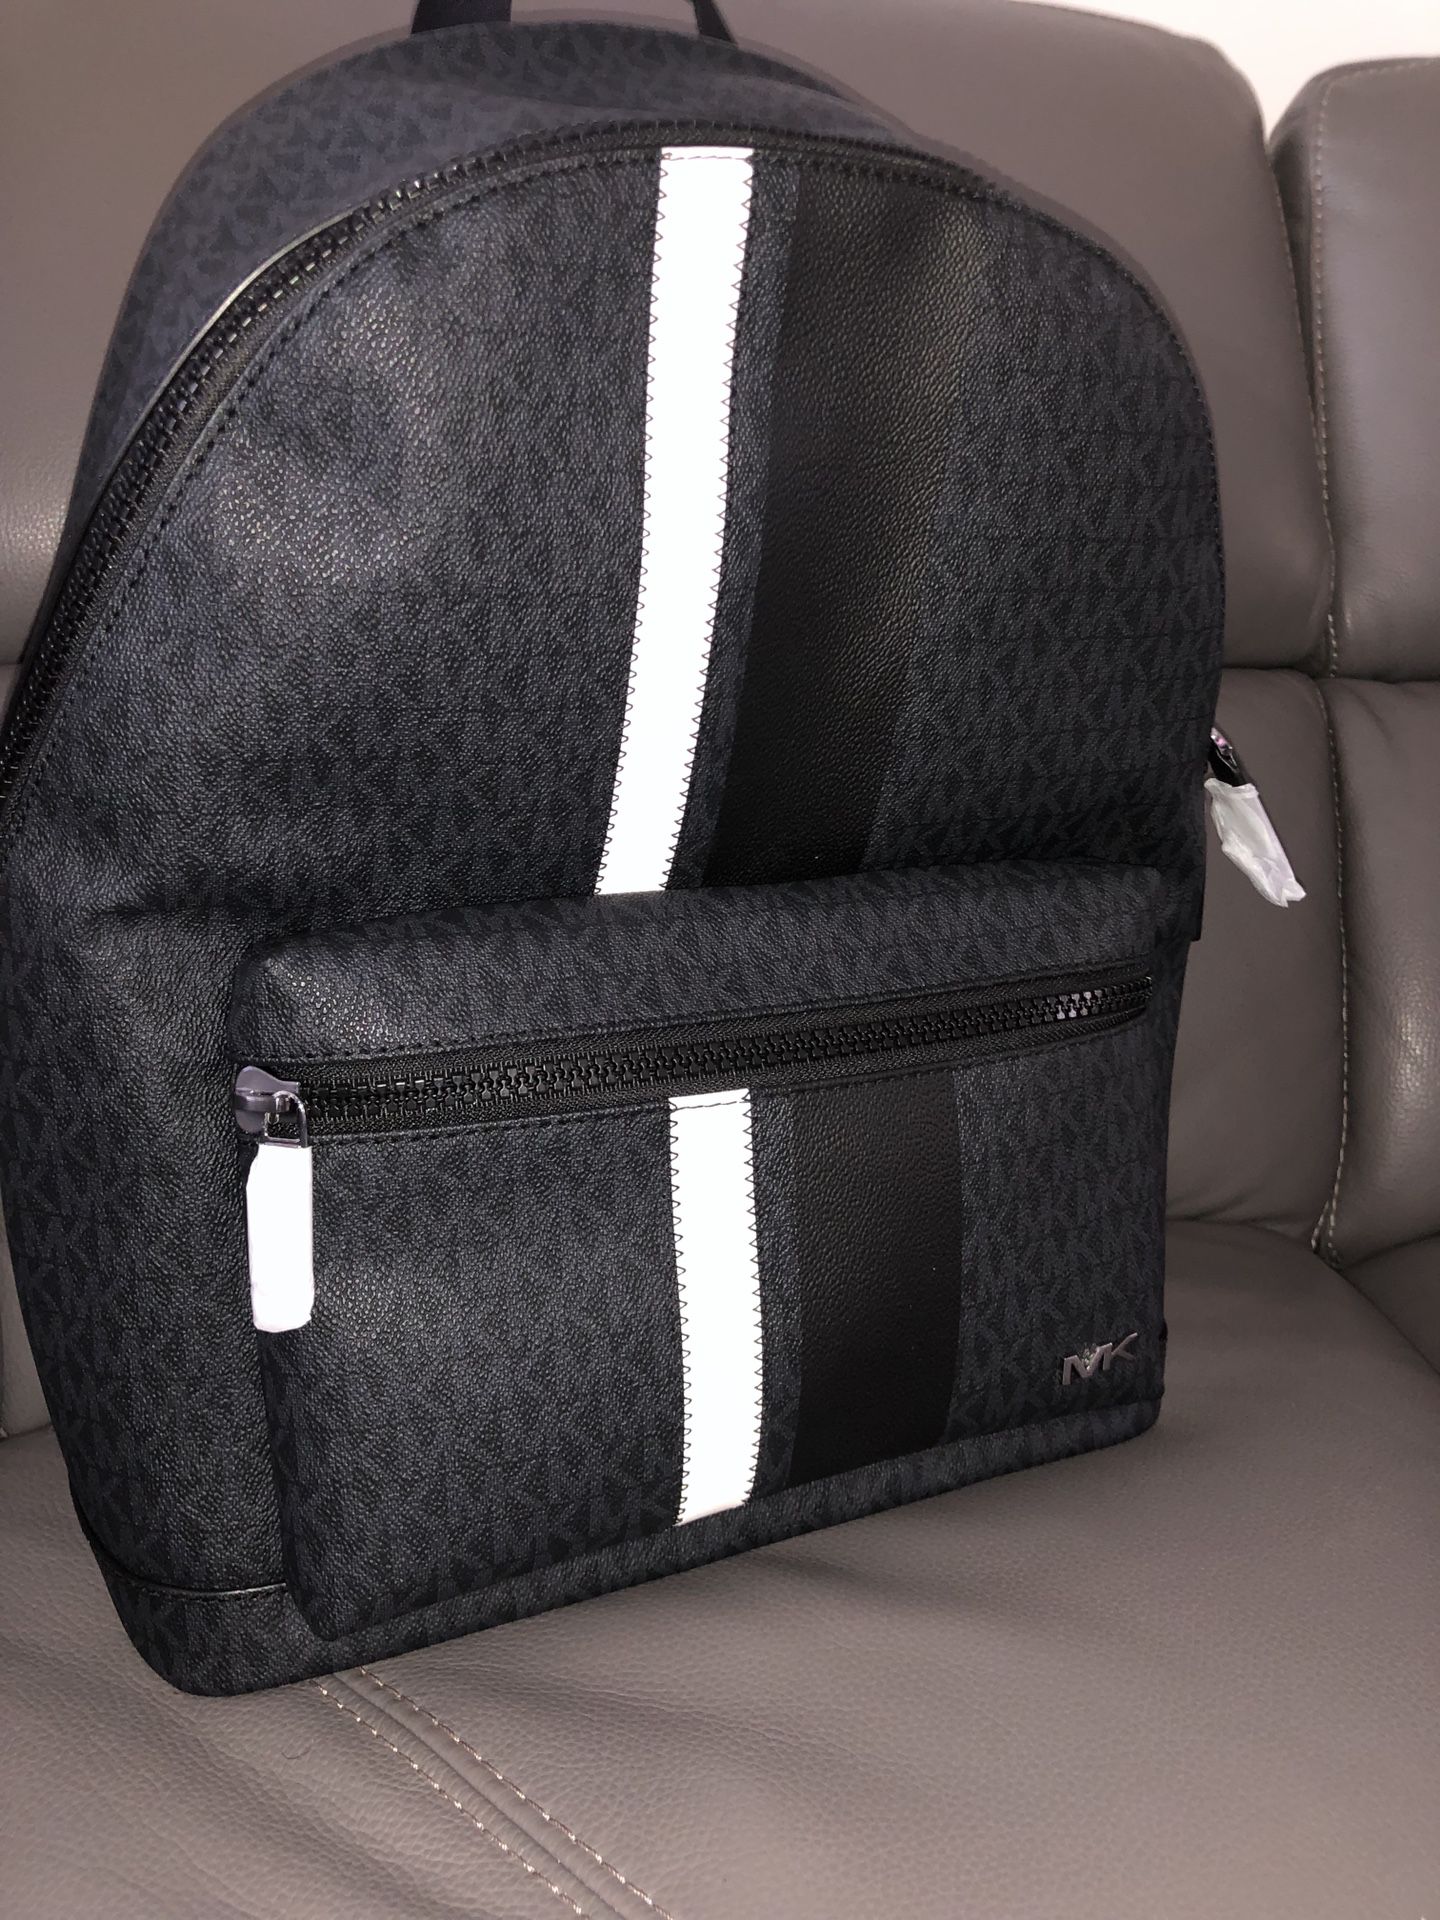 Men’s designer michael kors backpack